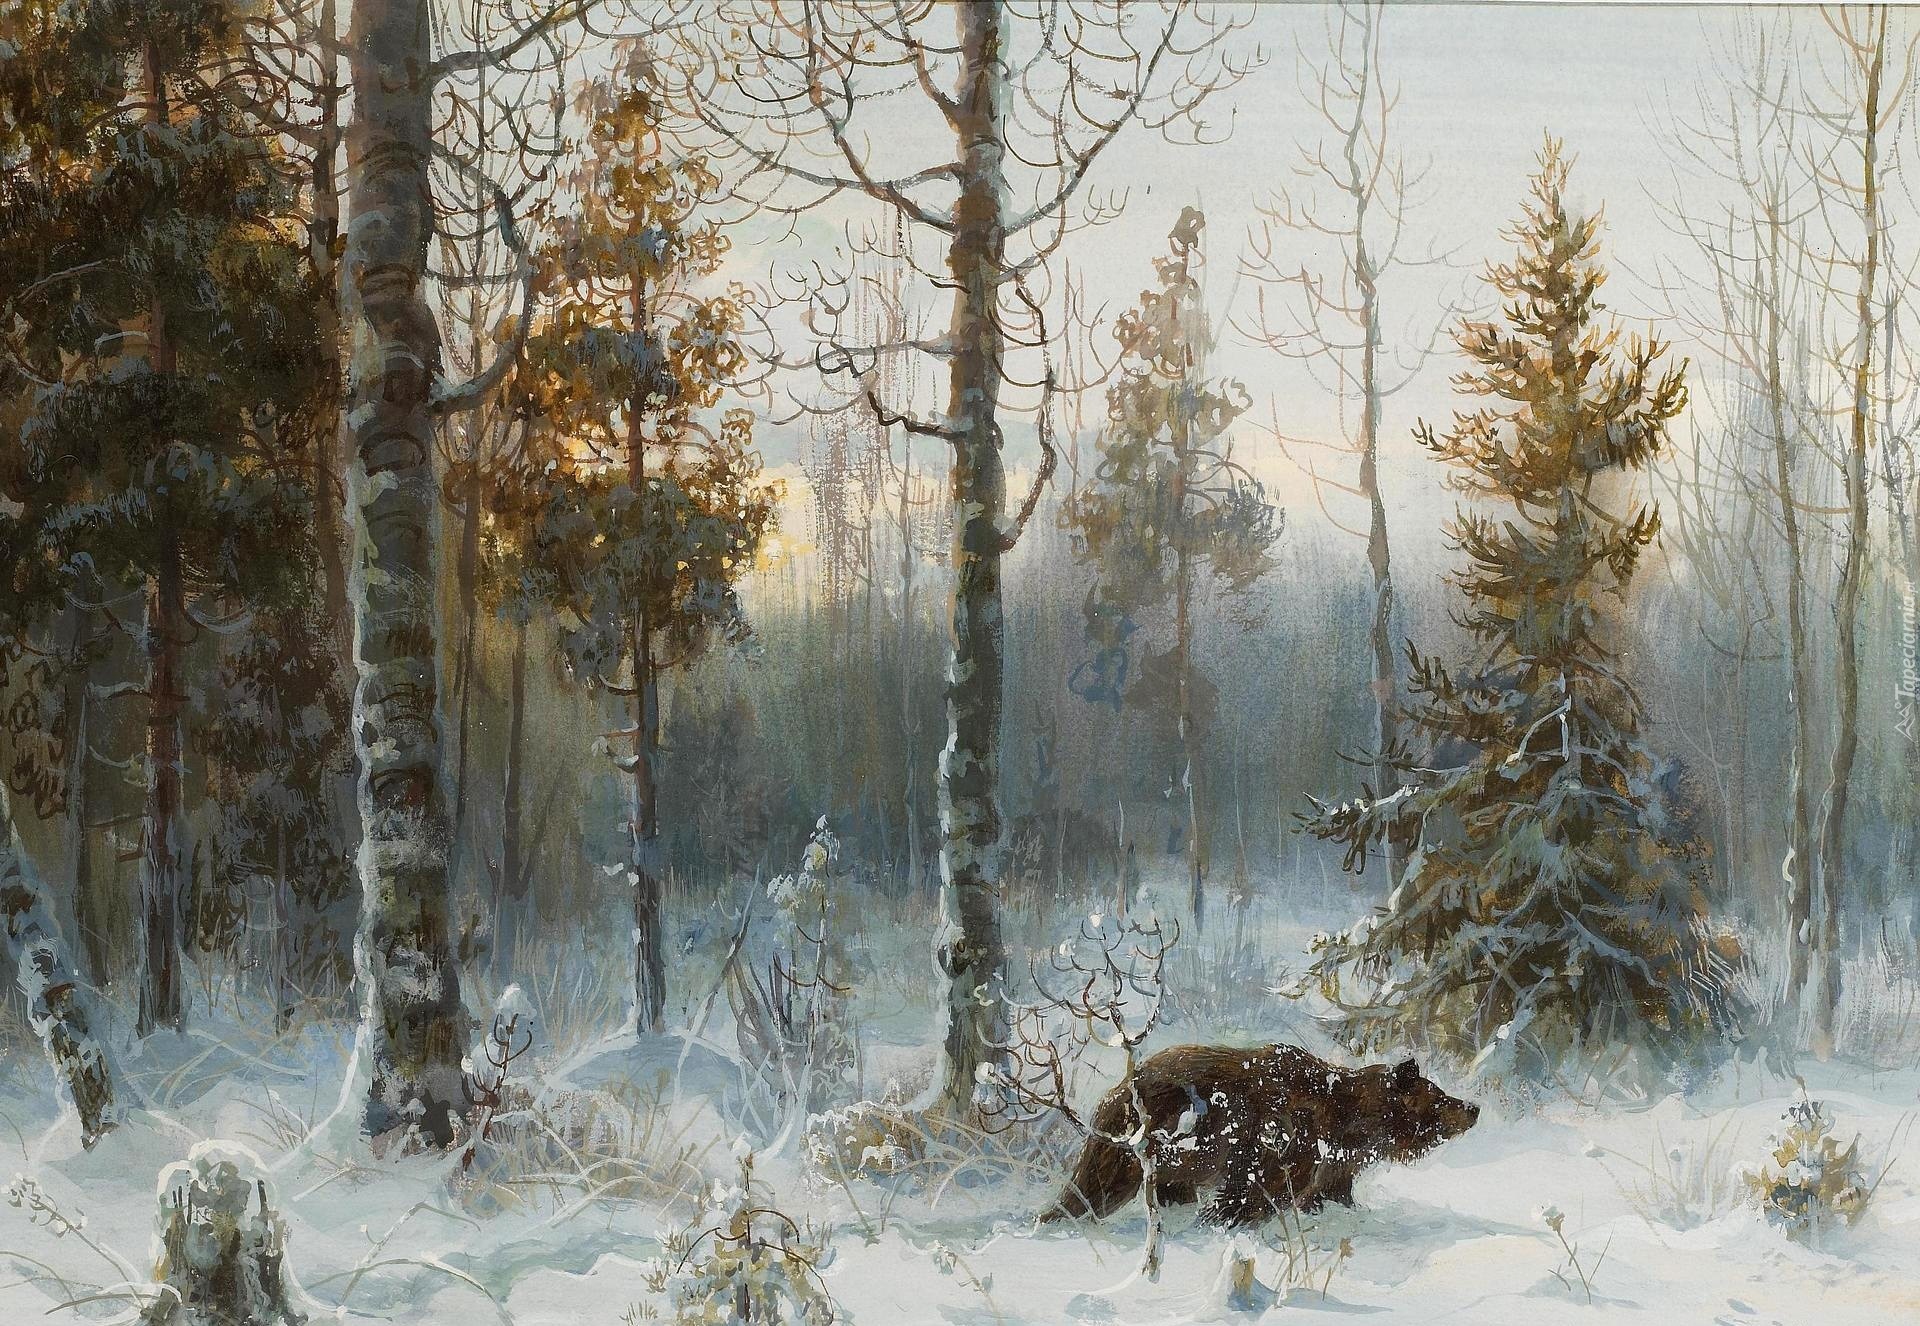 Zima, Las, Niedźwiedź, Reprodukcja obrazu